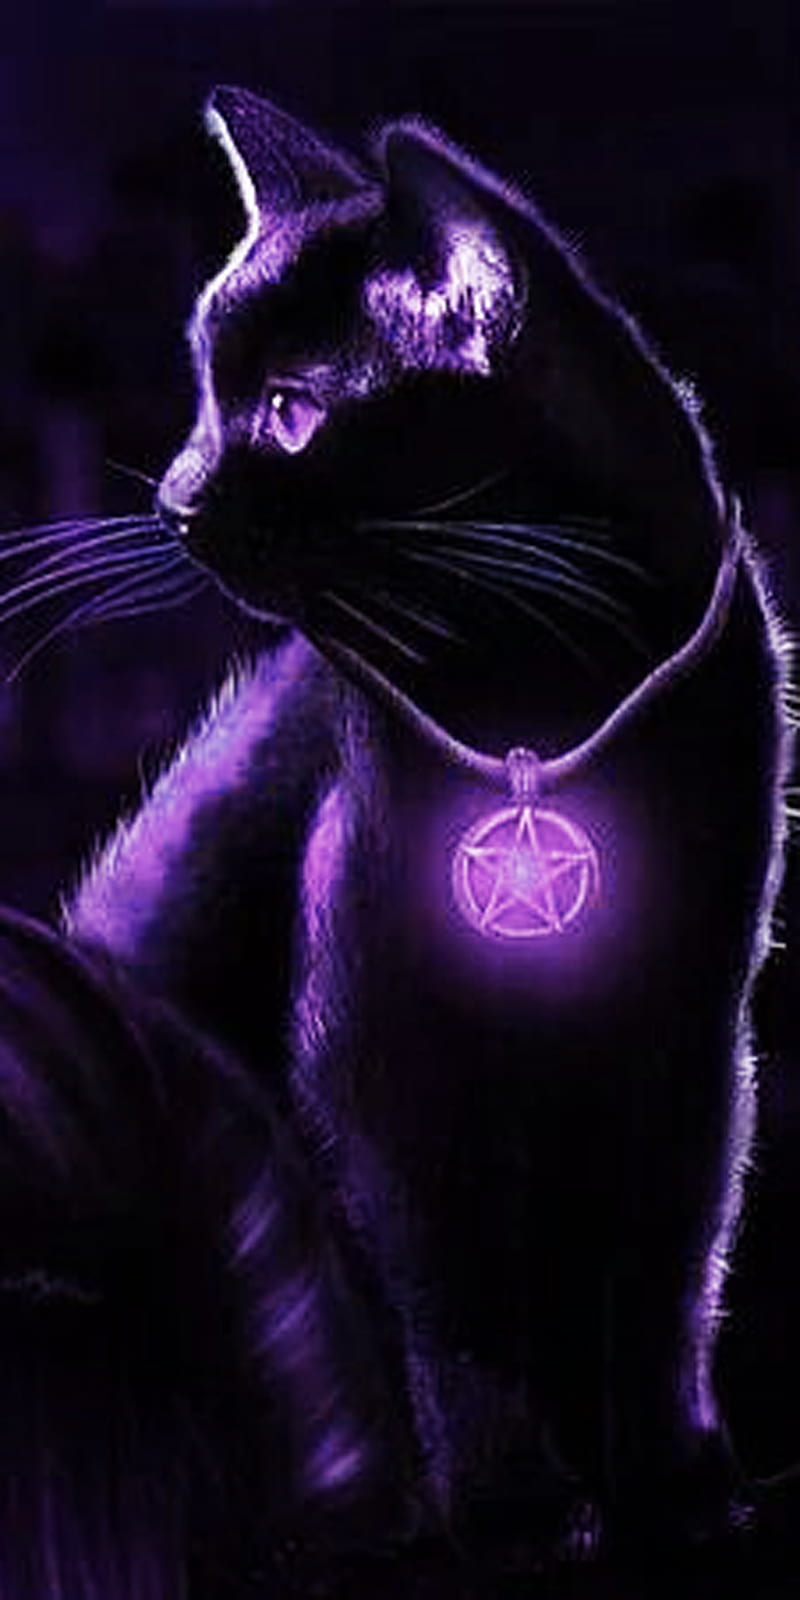 Download Black Aesthetic Cute Cat PFP Wallpaper